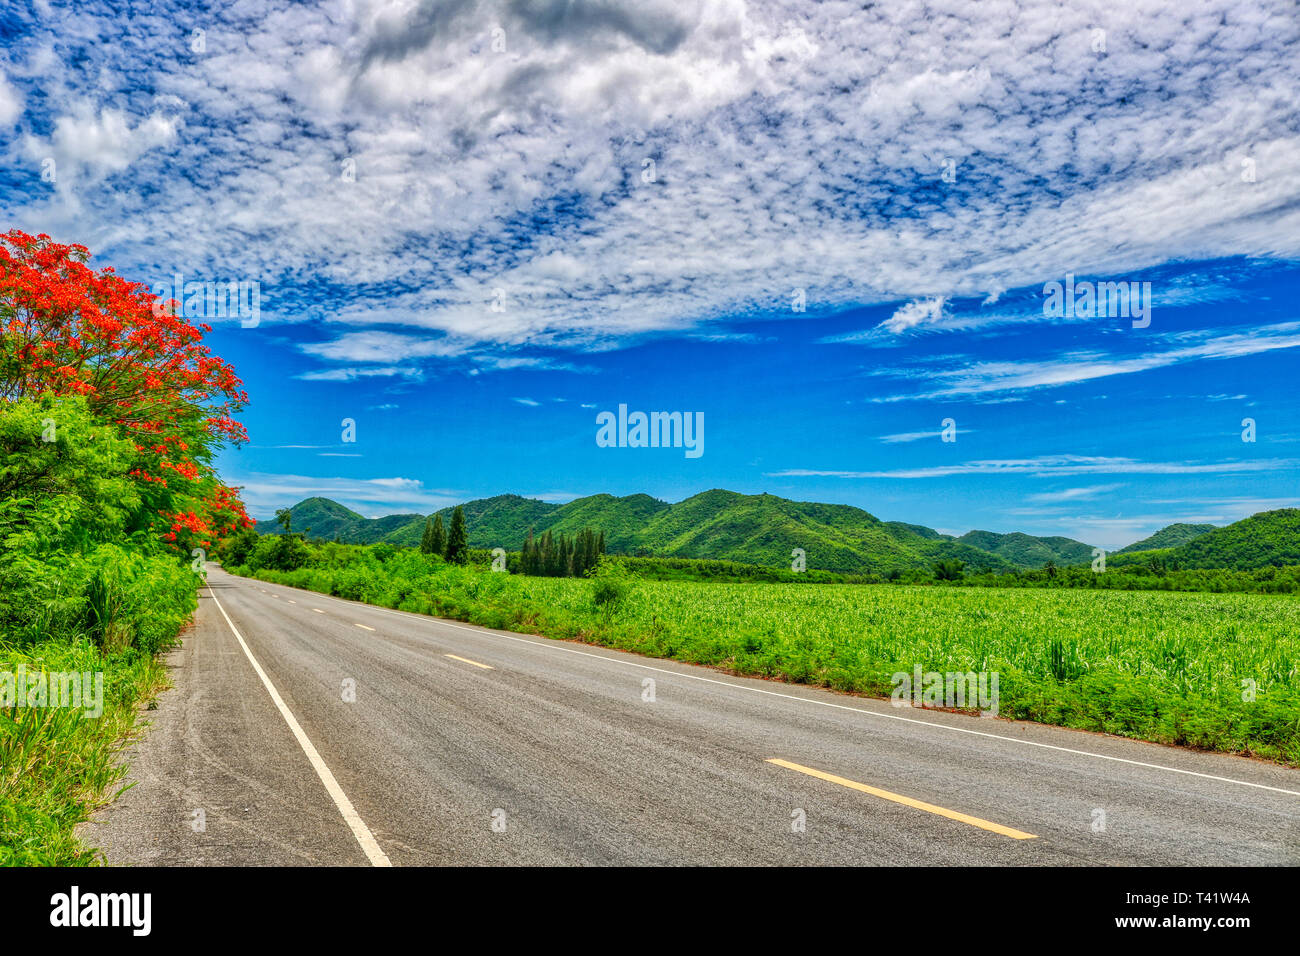 Questa unica immagine mostra la strada in natura con le colline e gli alberi al Kaeng Krachan National Park in Thailandia Foto Stock